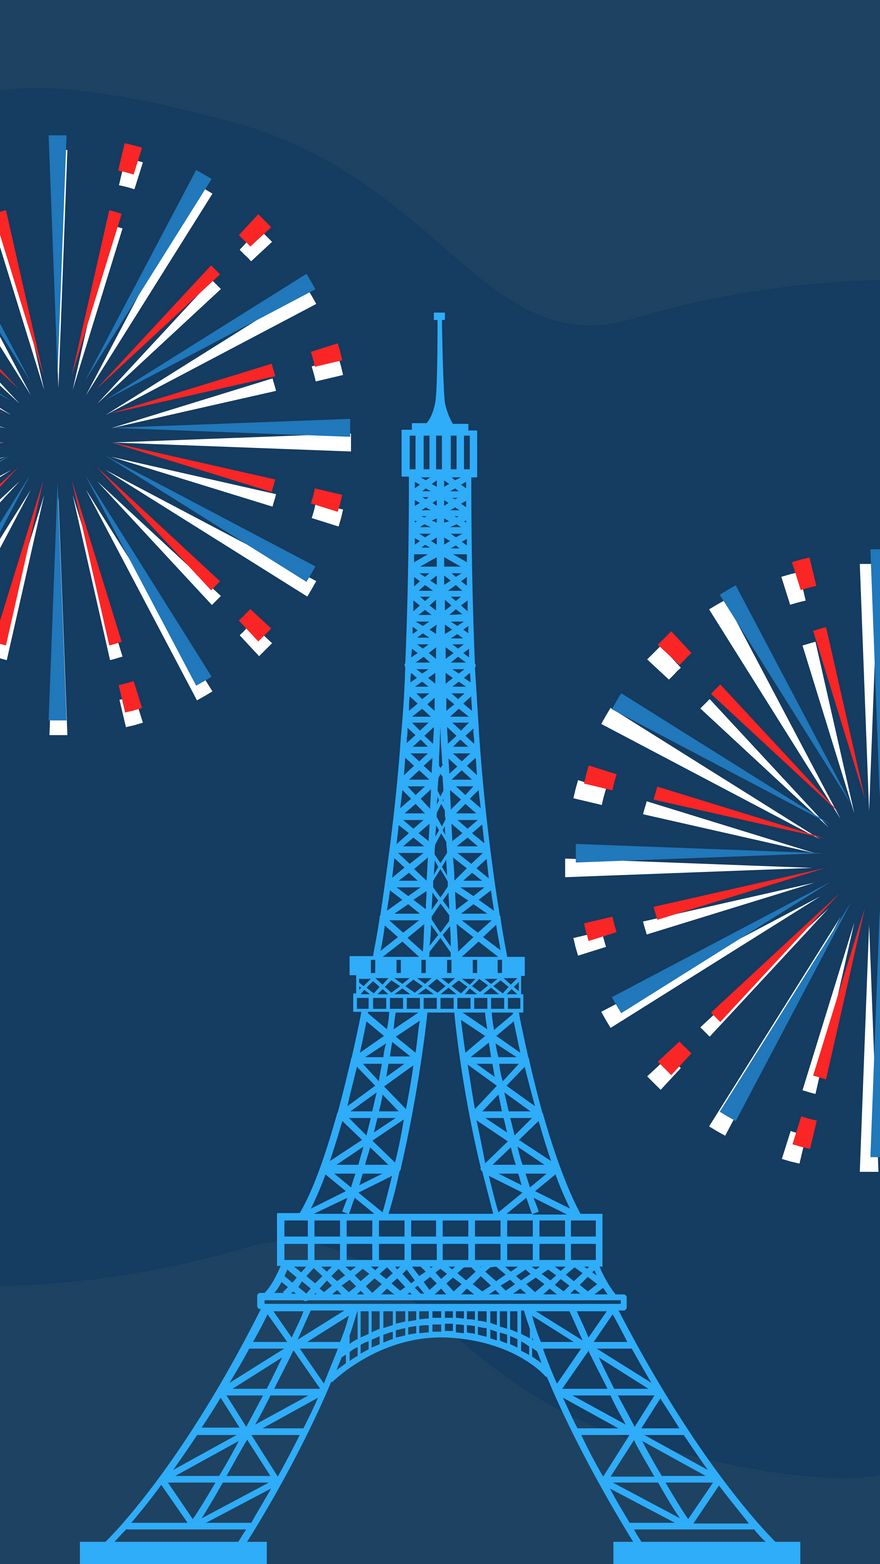 Free Bastille Day iPhone Background in PDF, Illustrator, PSD, EPS, SVG, JPG, PNG